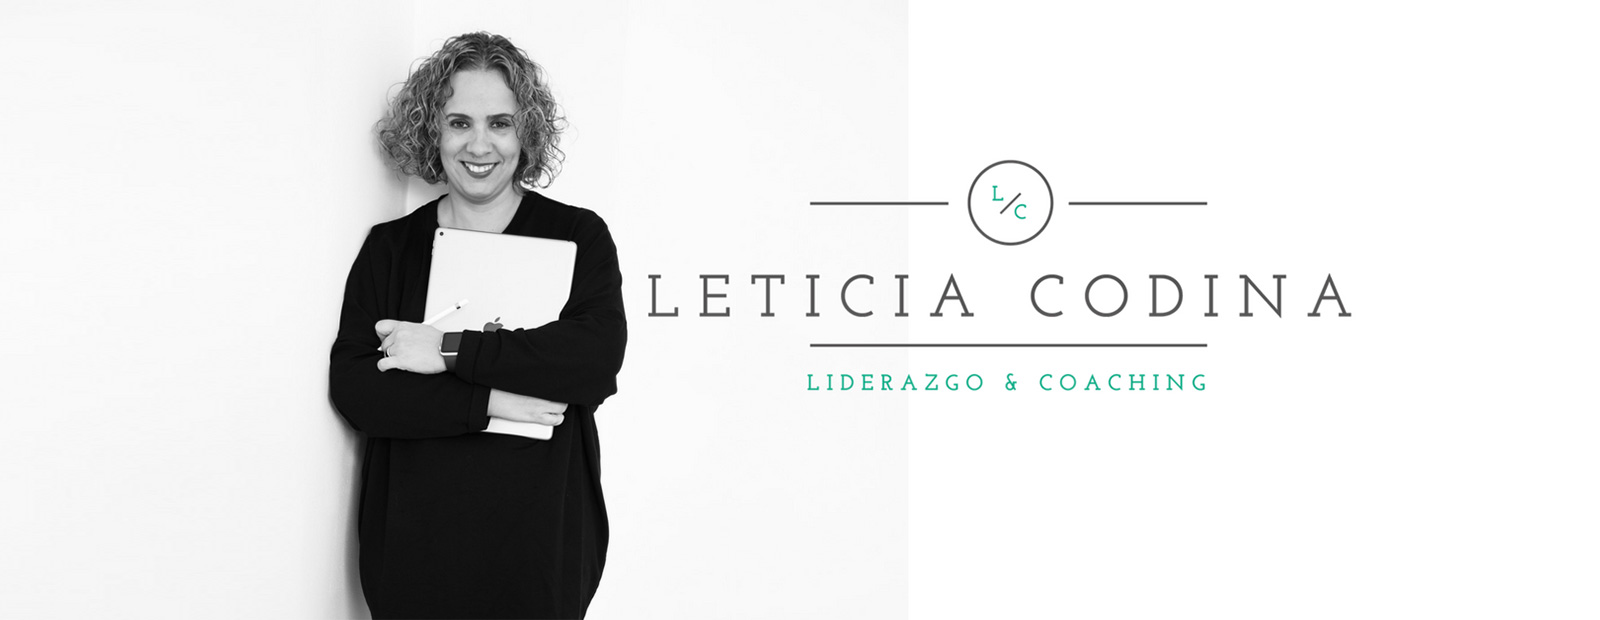 leticia-codina-slider-01